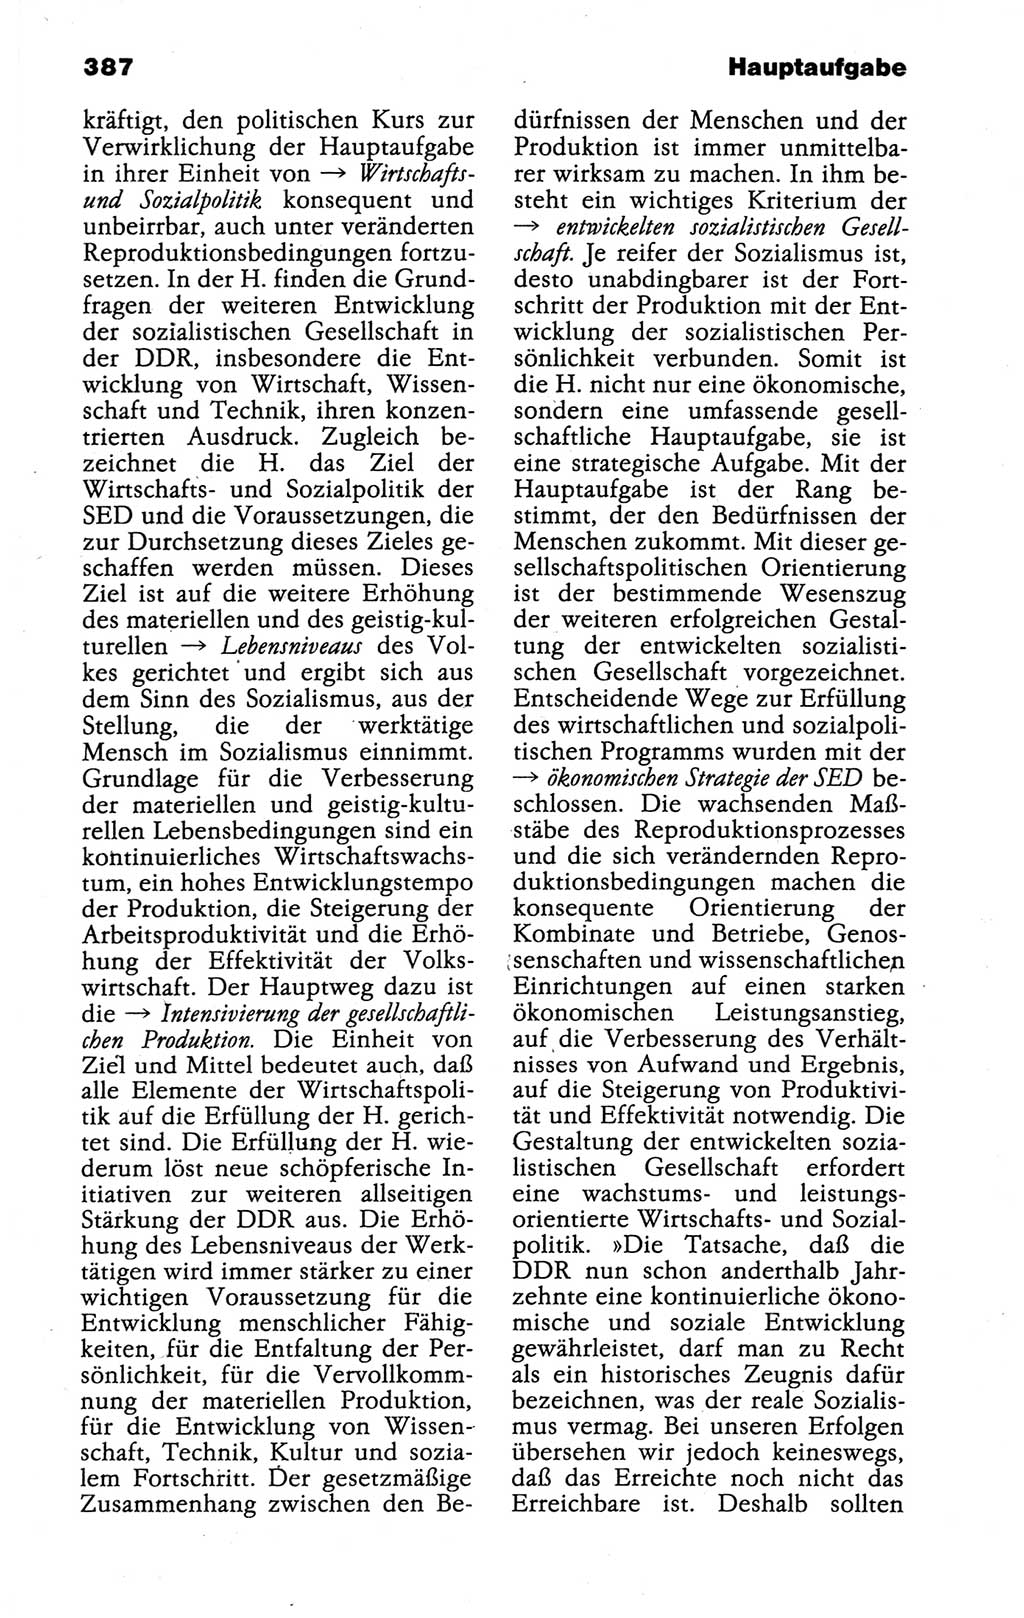 Kleines politisches Wörterbuch [Deutsche Demokratische Republik (DDR)] 1988, Seite 387 (Kl. pol. Wb. DDR 1988, S. 387)